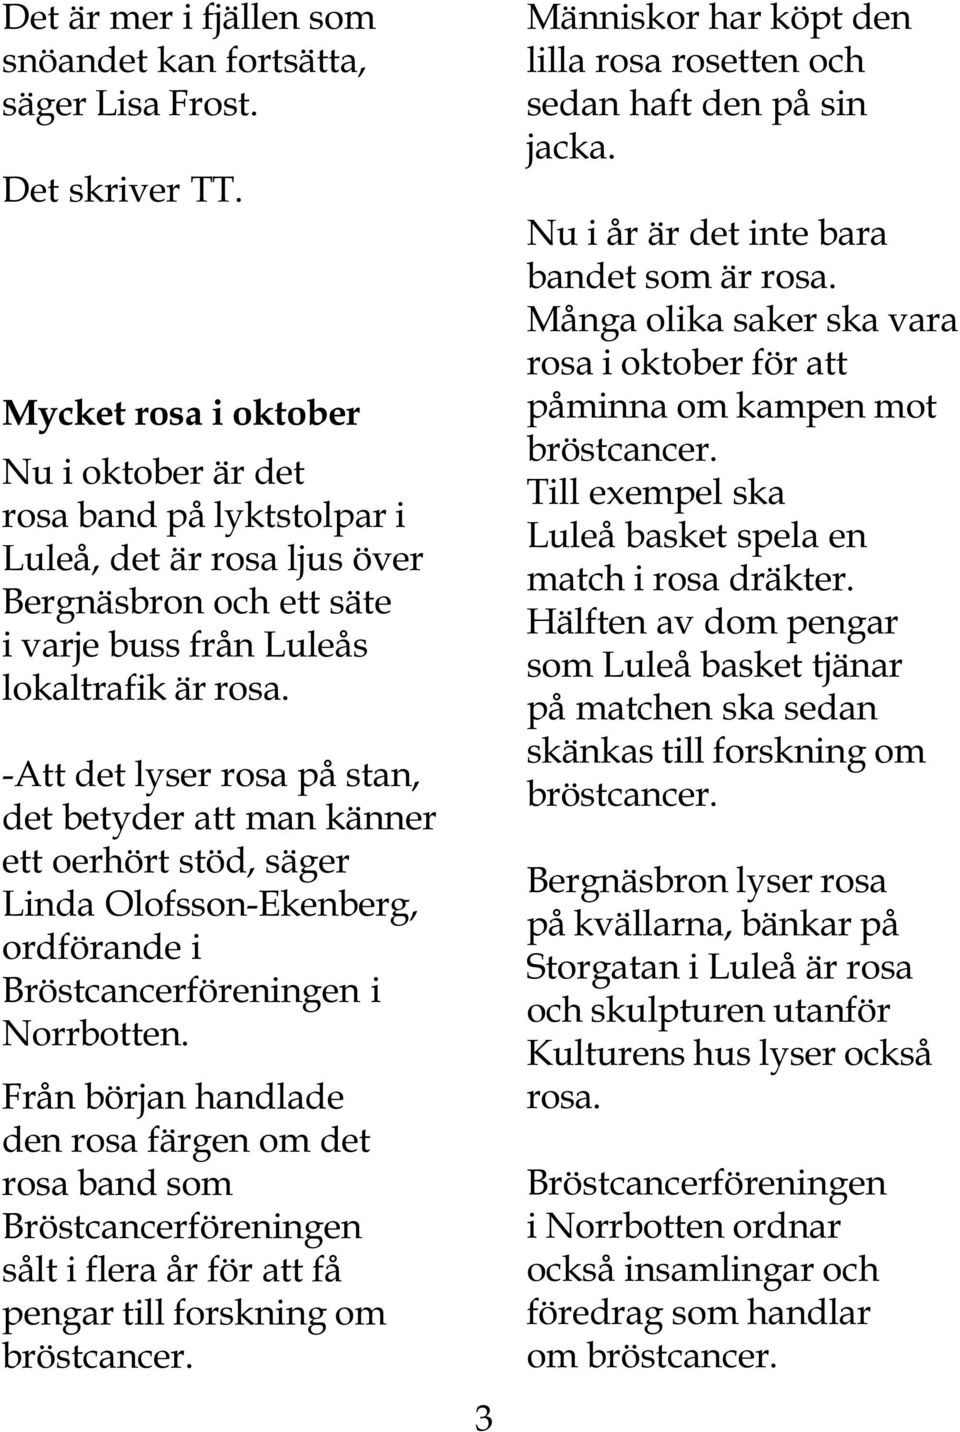 -Att det lyser rosa på stan, det betyder att man känner ett oerhört stöd, säger Linda Olofsson-Ekenberg, ordförande i Bröstcancerföreningen i Norrbotten.